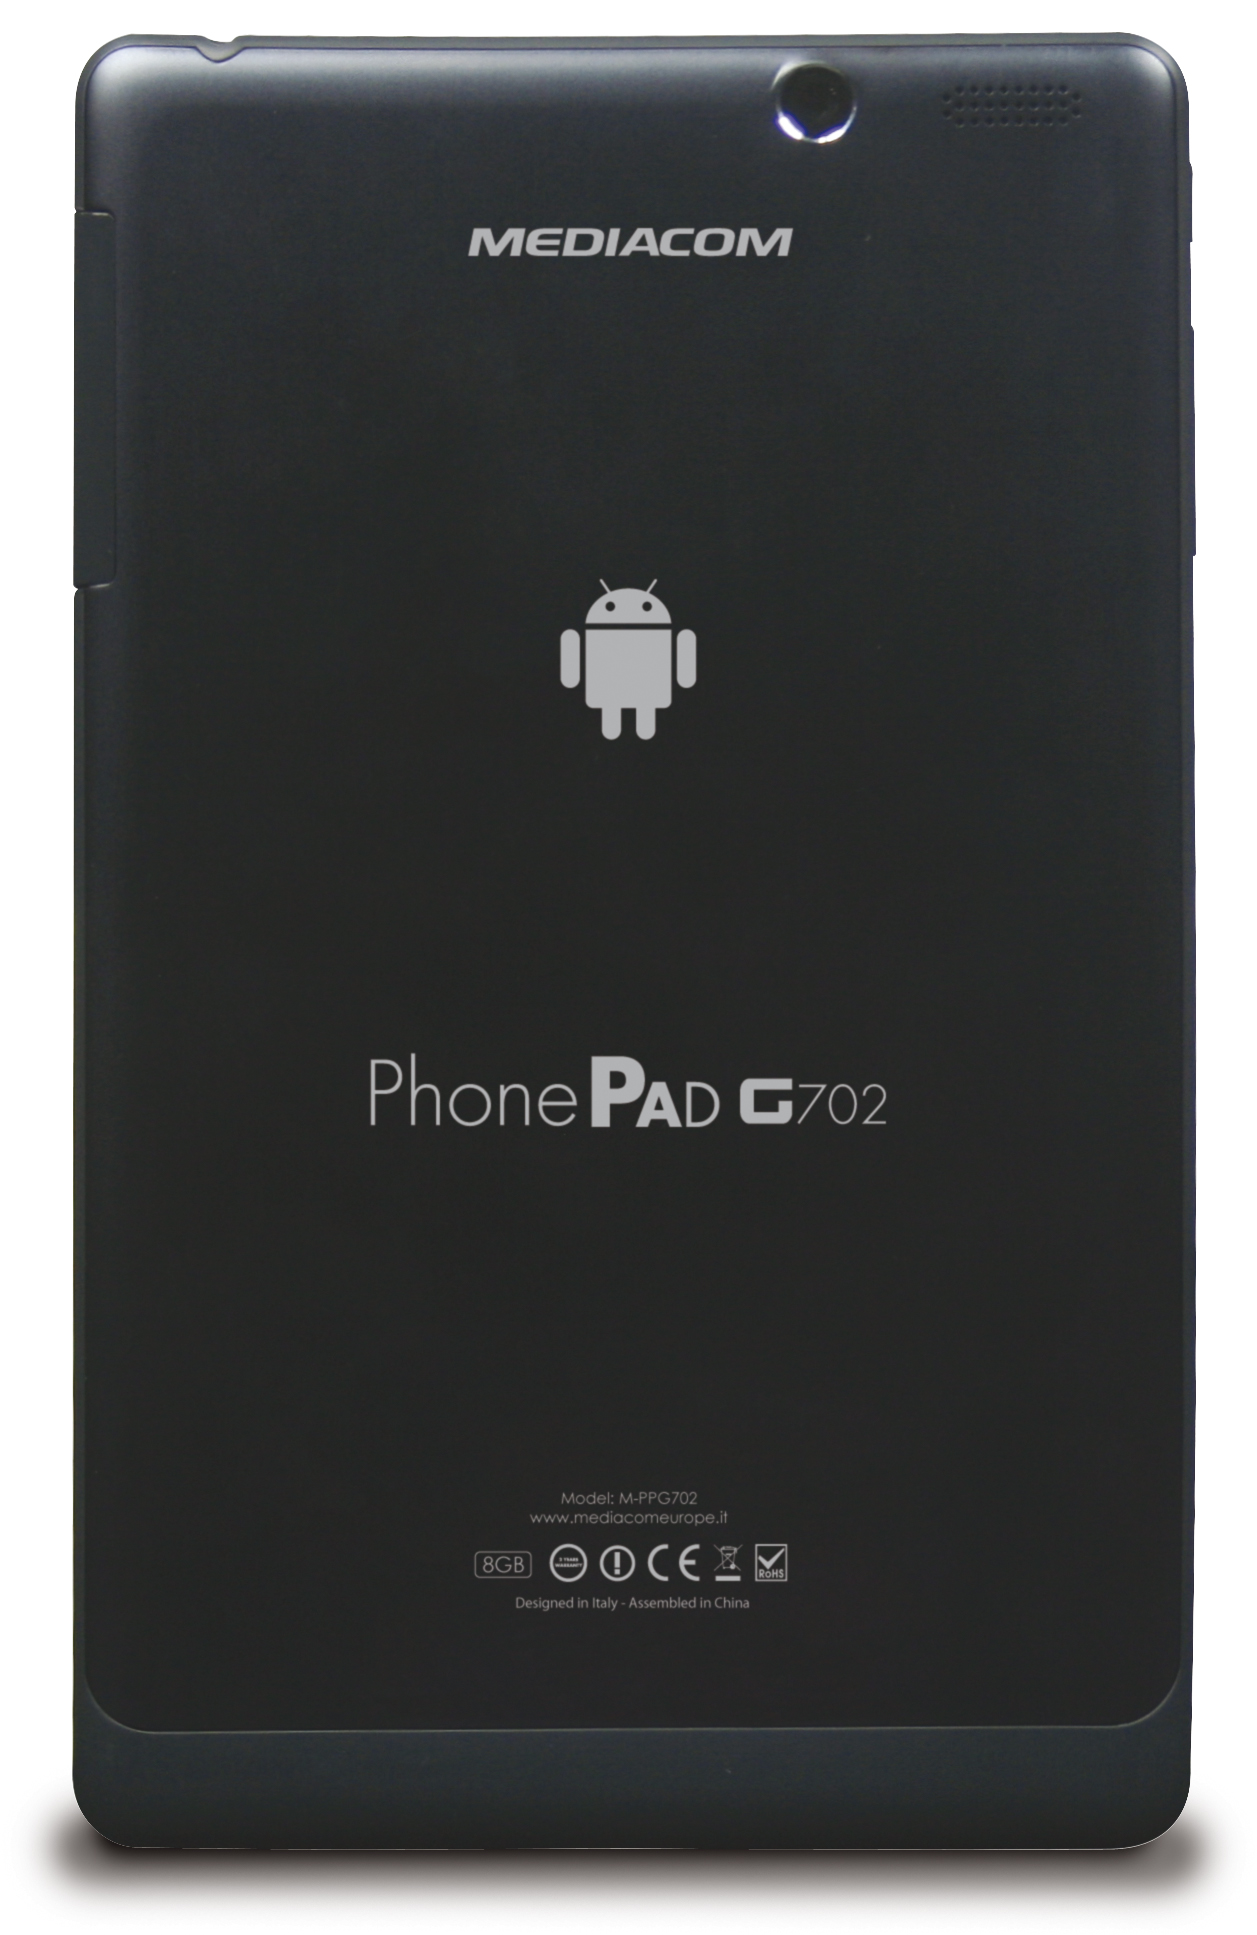 Immagine pubblicata in relazione al seguente contenuto: Da Mediacom il tablet PhonePad G702 con SoC quad-core e Android 4.2 | Nome immagine: news20692_Mediacom-PhonePad-G702_3.jpg